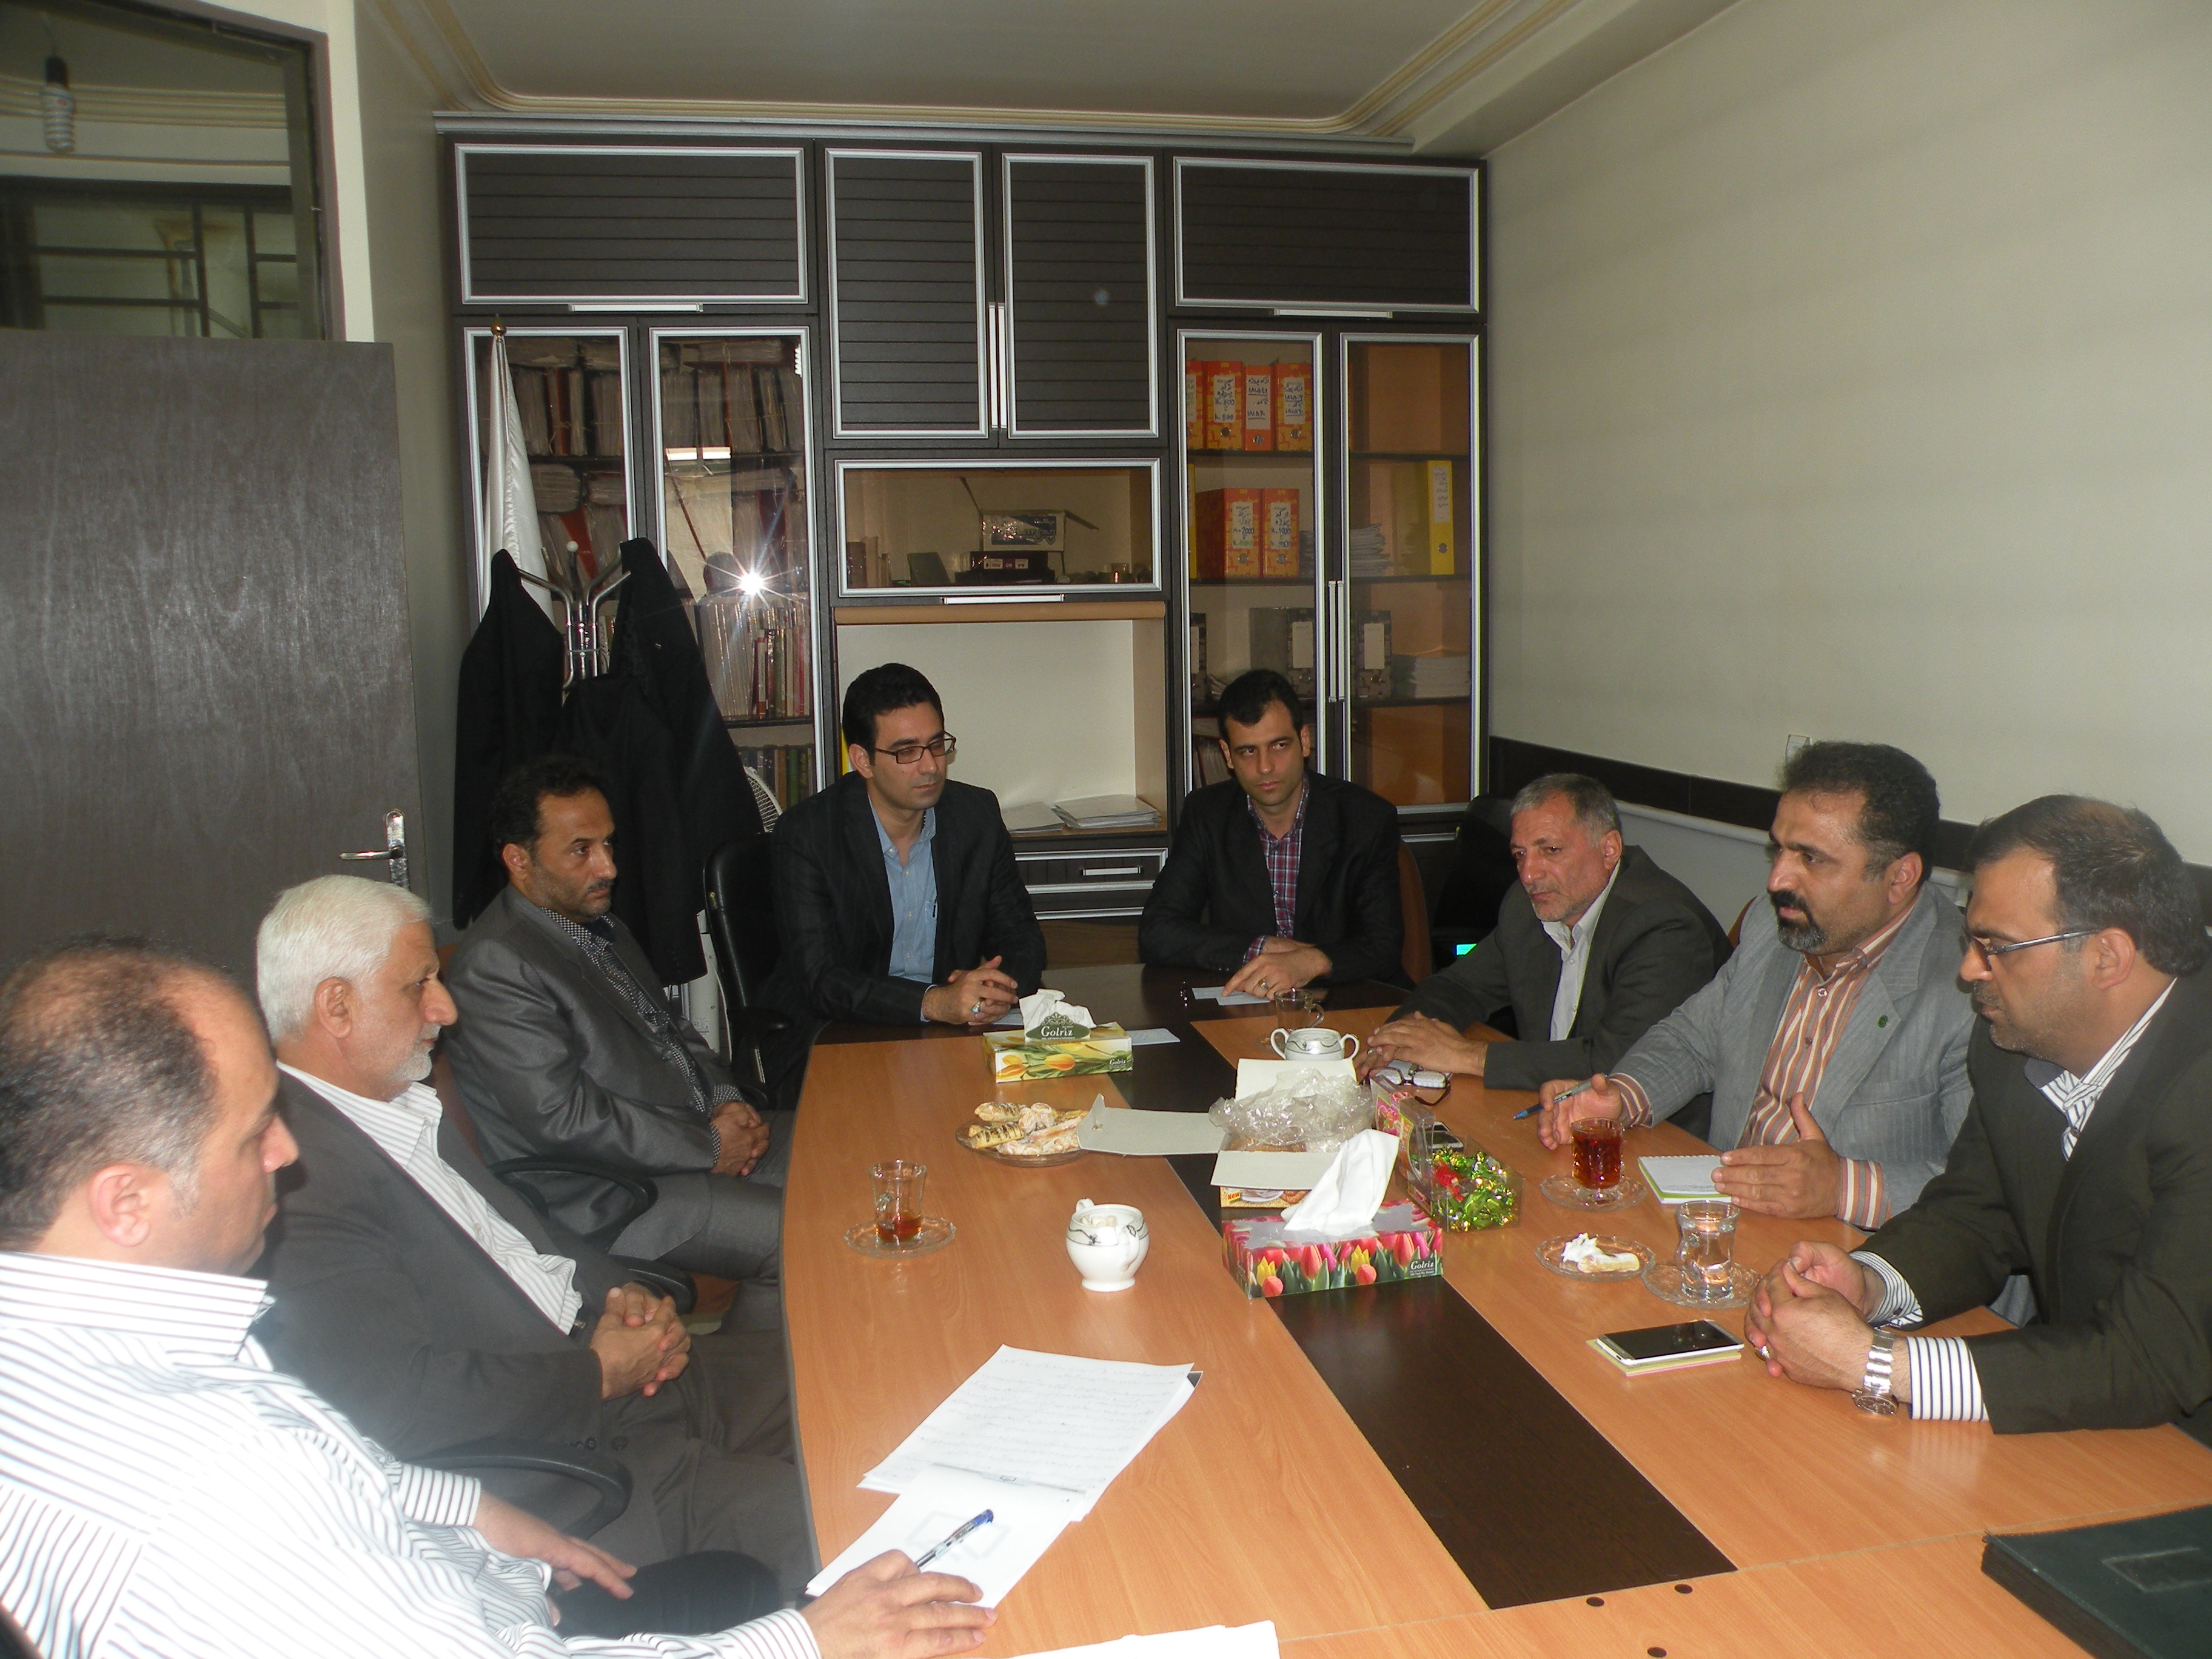 جلسه شورای اسلامی وشهرداری زیراب با هئیت رئیسه دفتر نمایندگی سوادکوه
